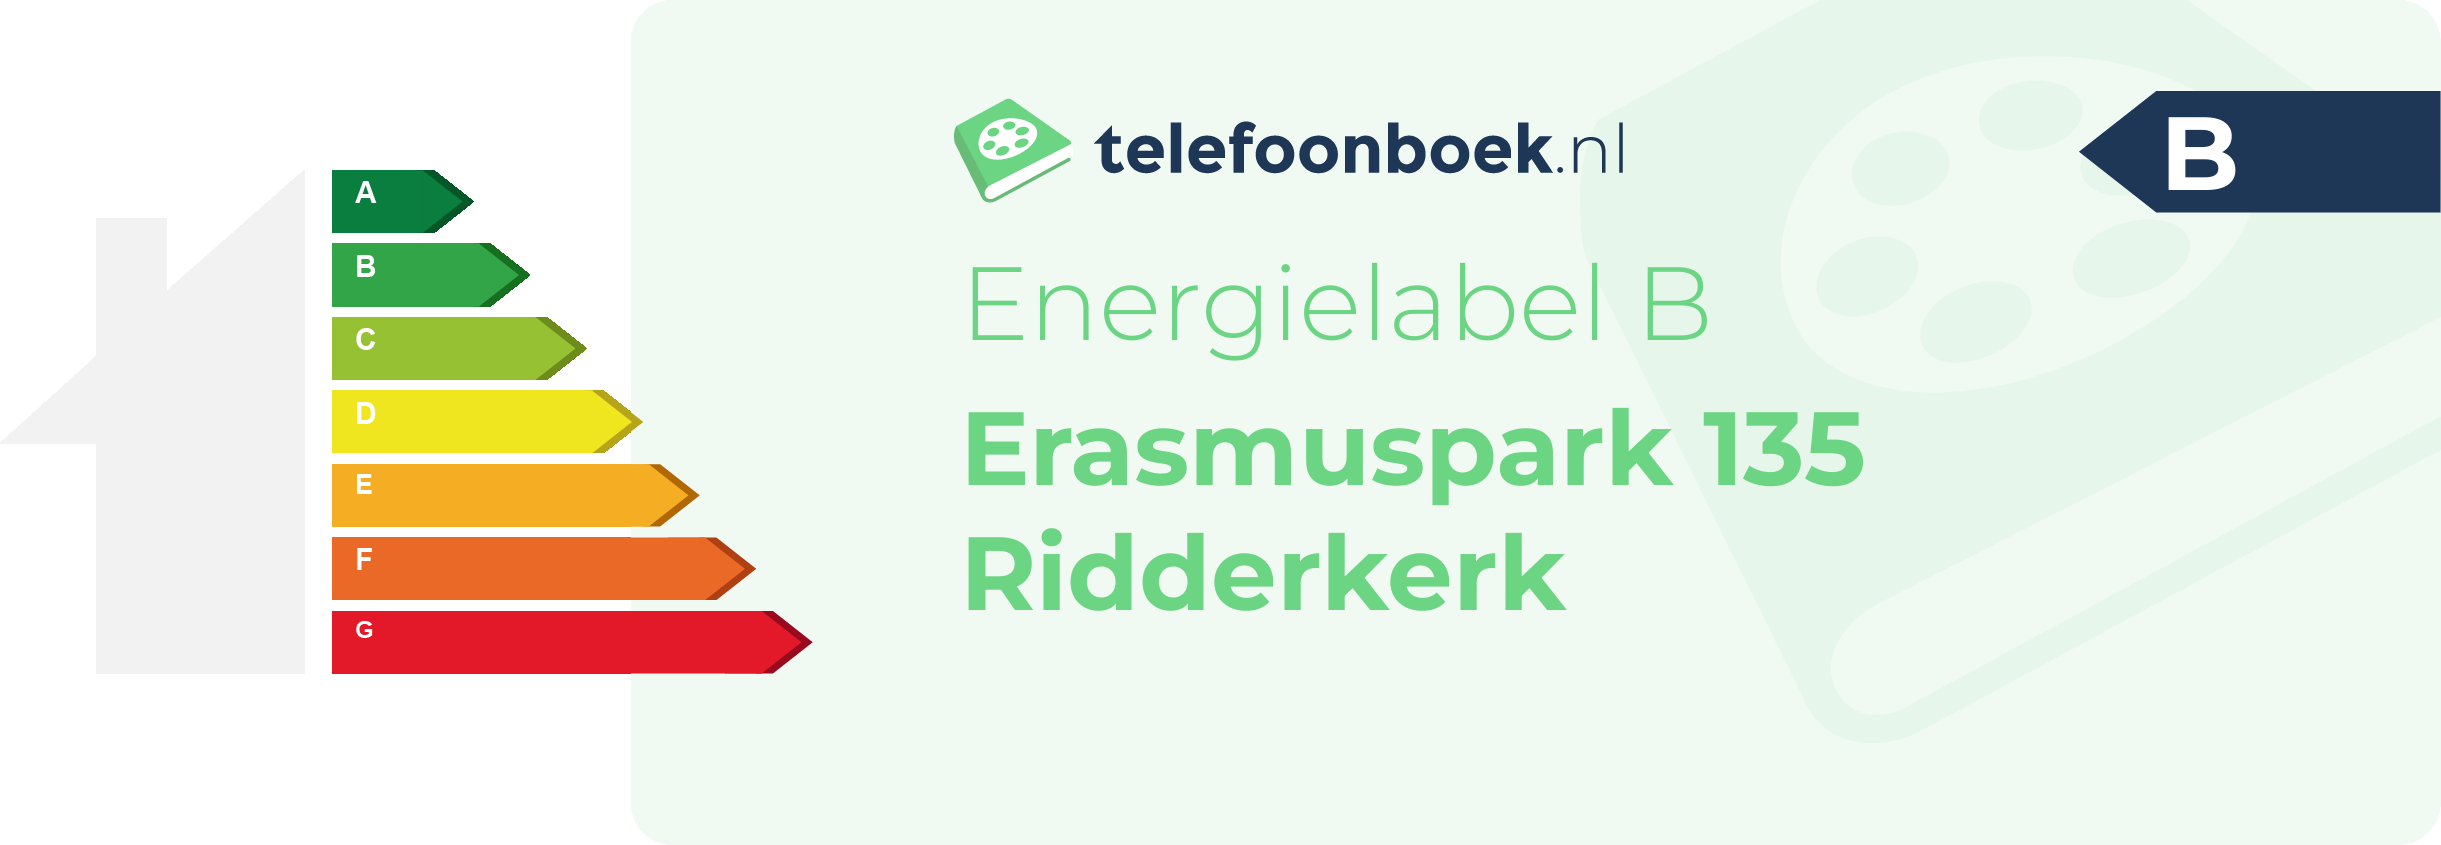 Energielabel Erasmuspark 135 Ridderkerk